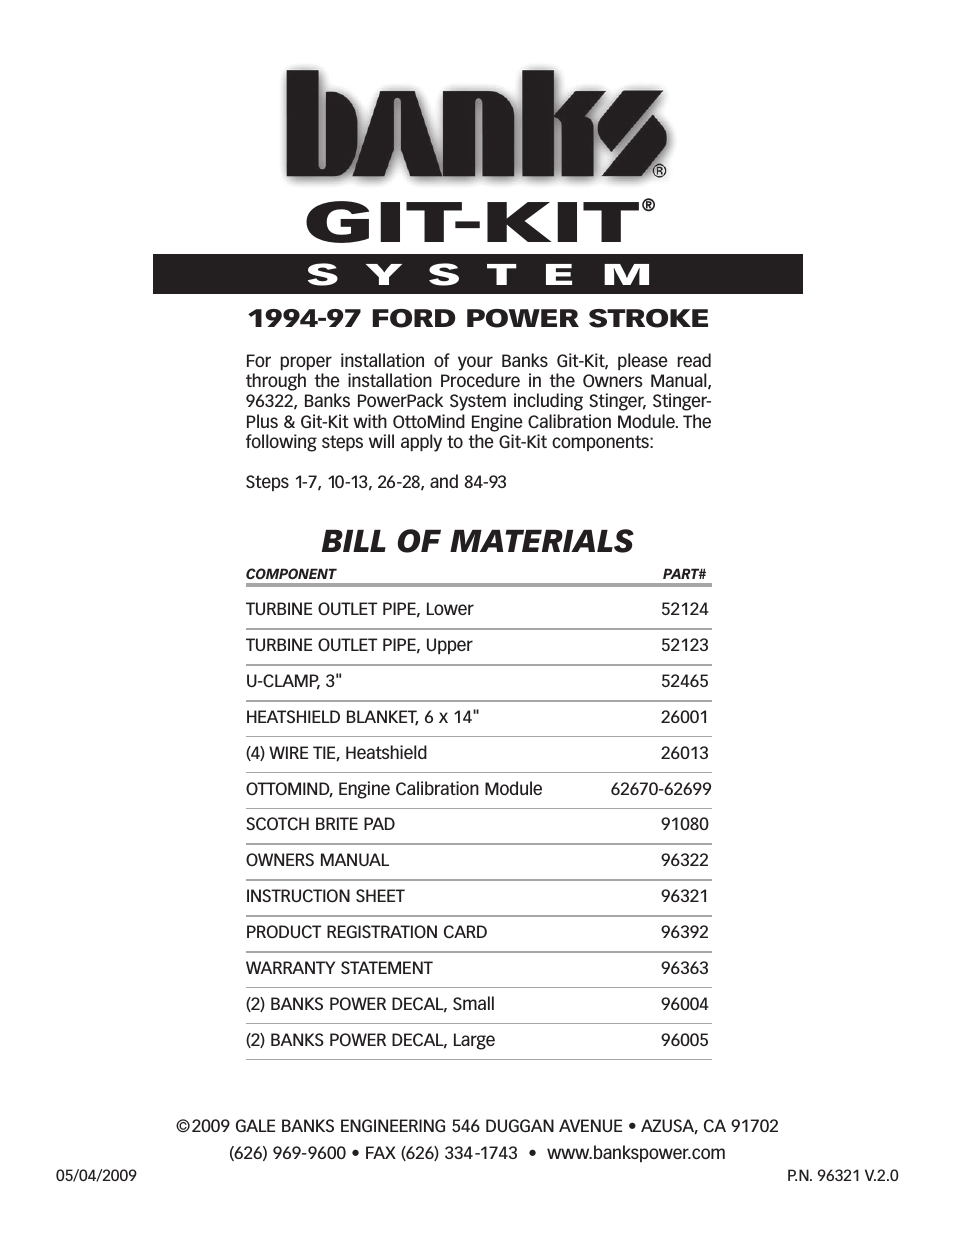 Ford Trucks: (Diesel ’94 - 97 7.3L Power Stroke) Power Systems- Git-Kit '94-97